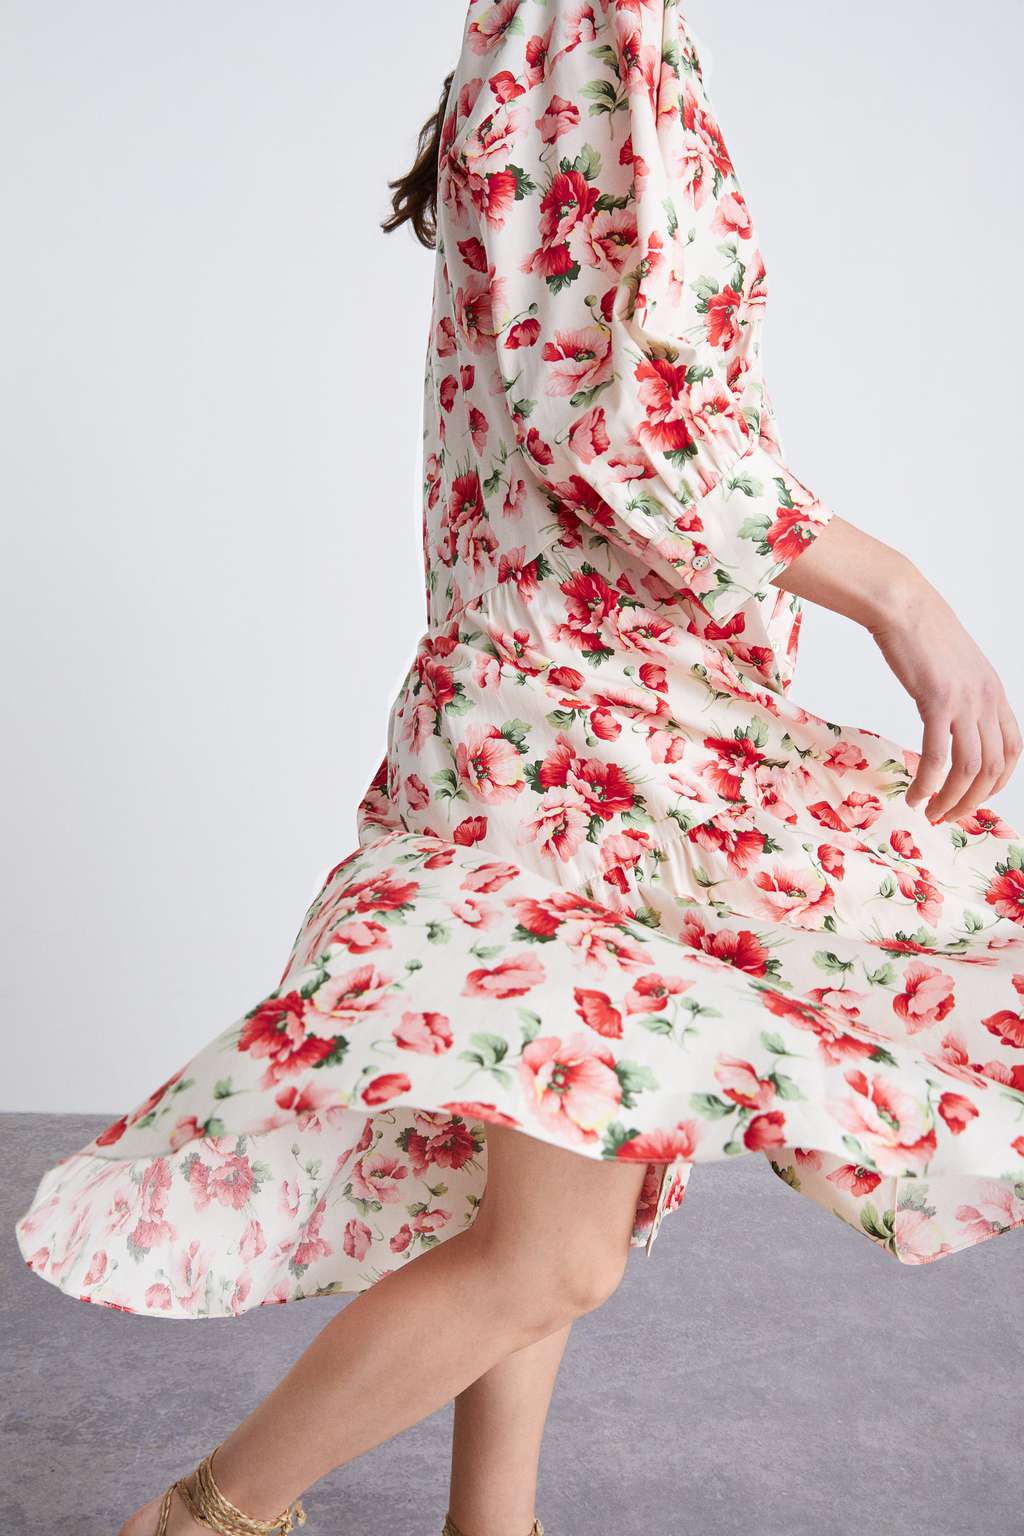 zara rose print dress